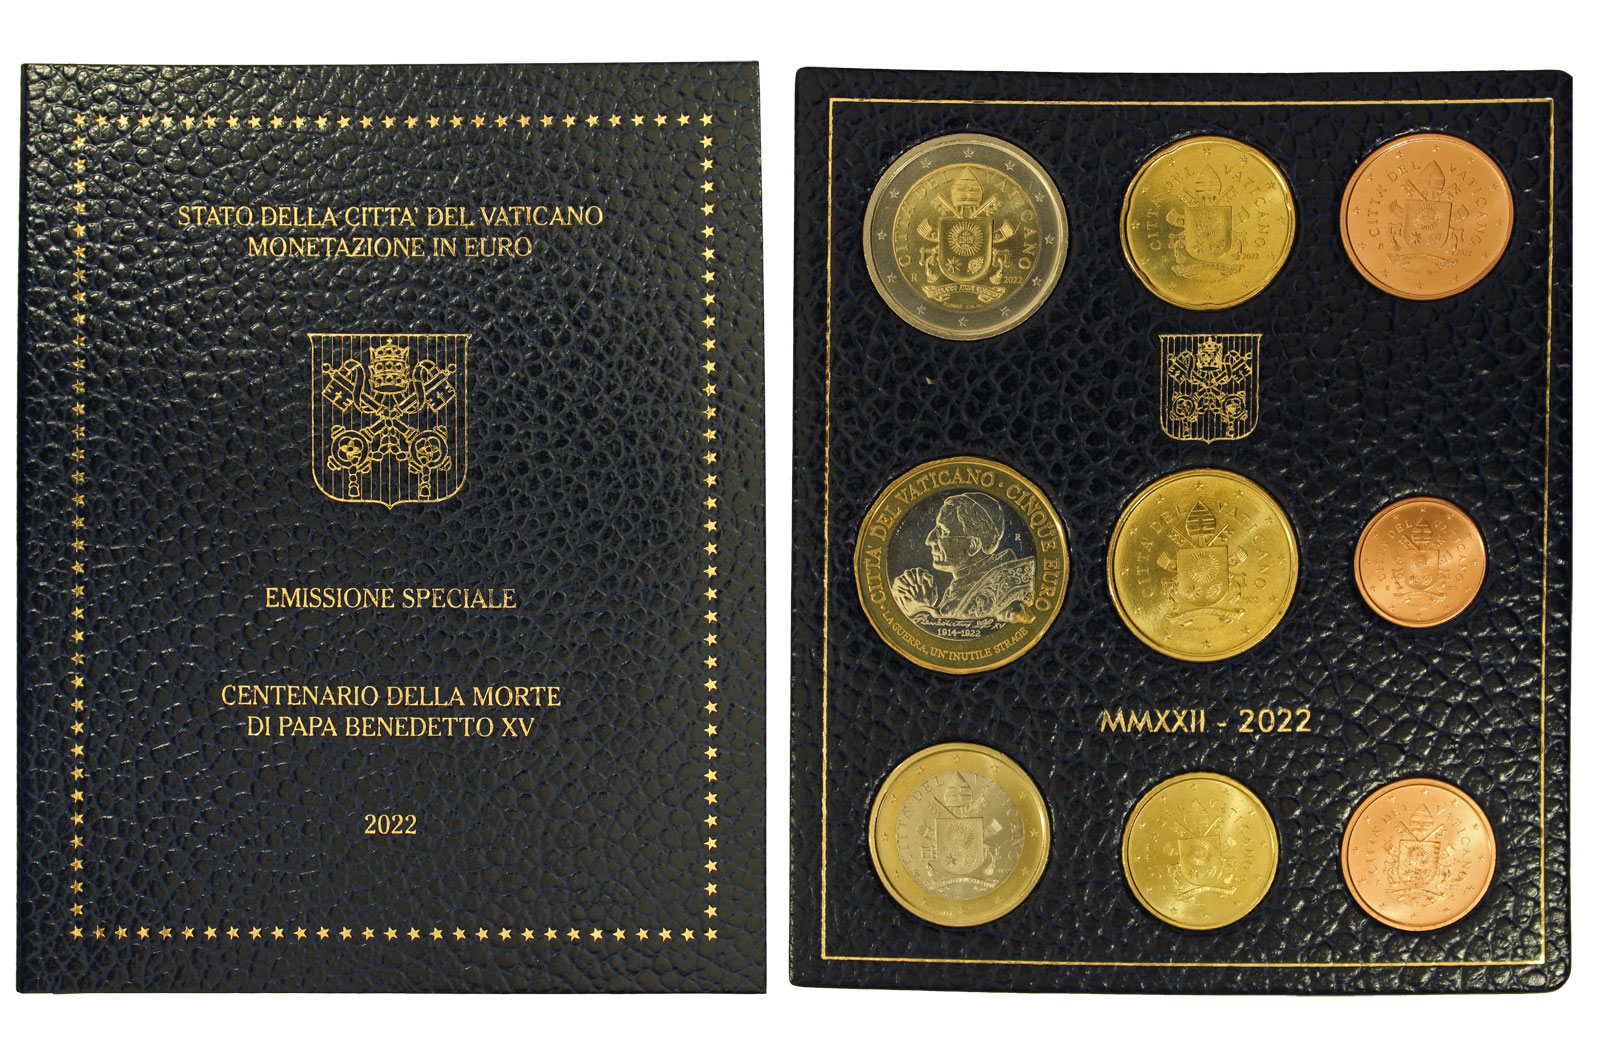 Emissione speciale "Centenario della morte di Papa Benedetto XV" - Serie completa di 9 monete in confezione ufficiale